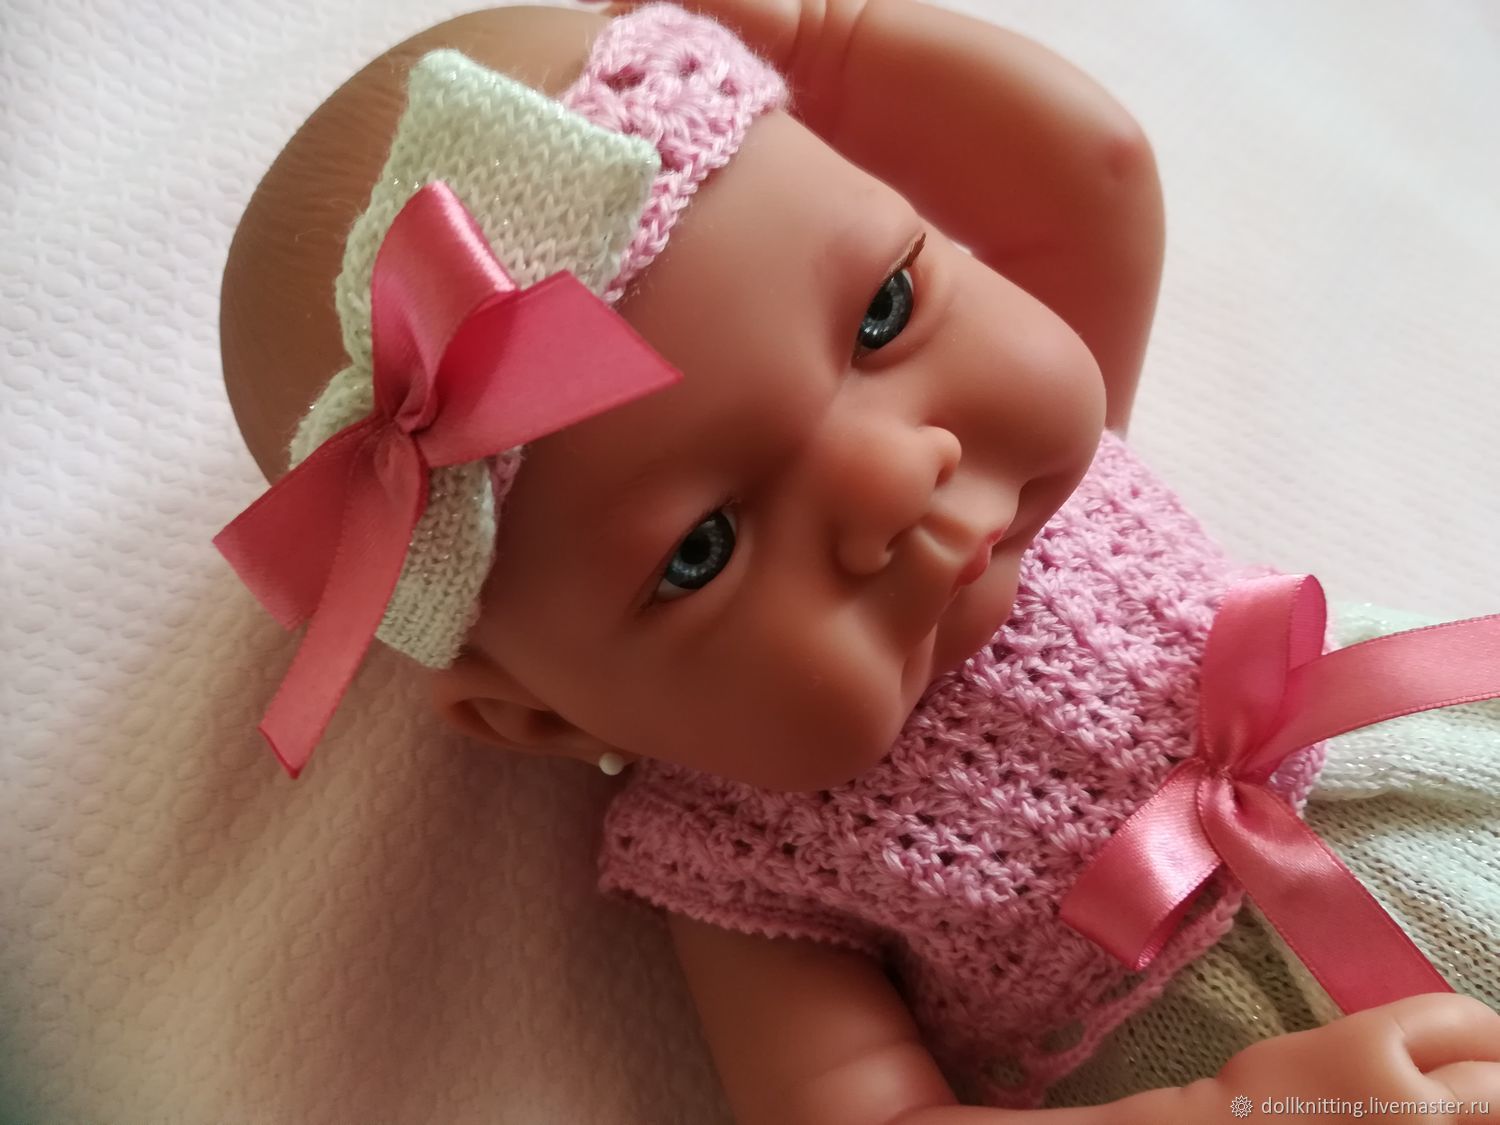 Купить Куклу Антонио Хуан В Интернет Магазине